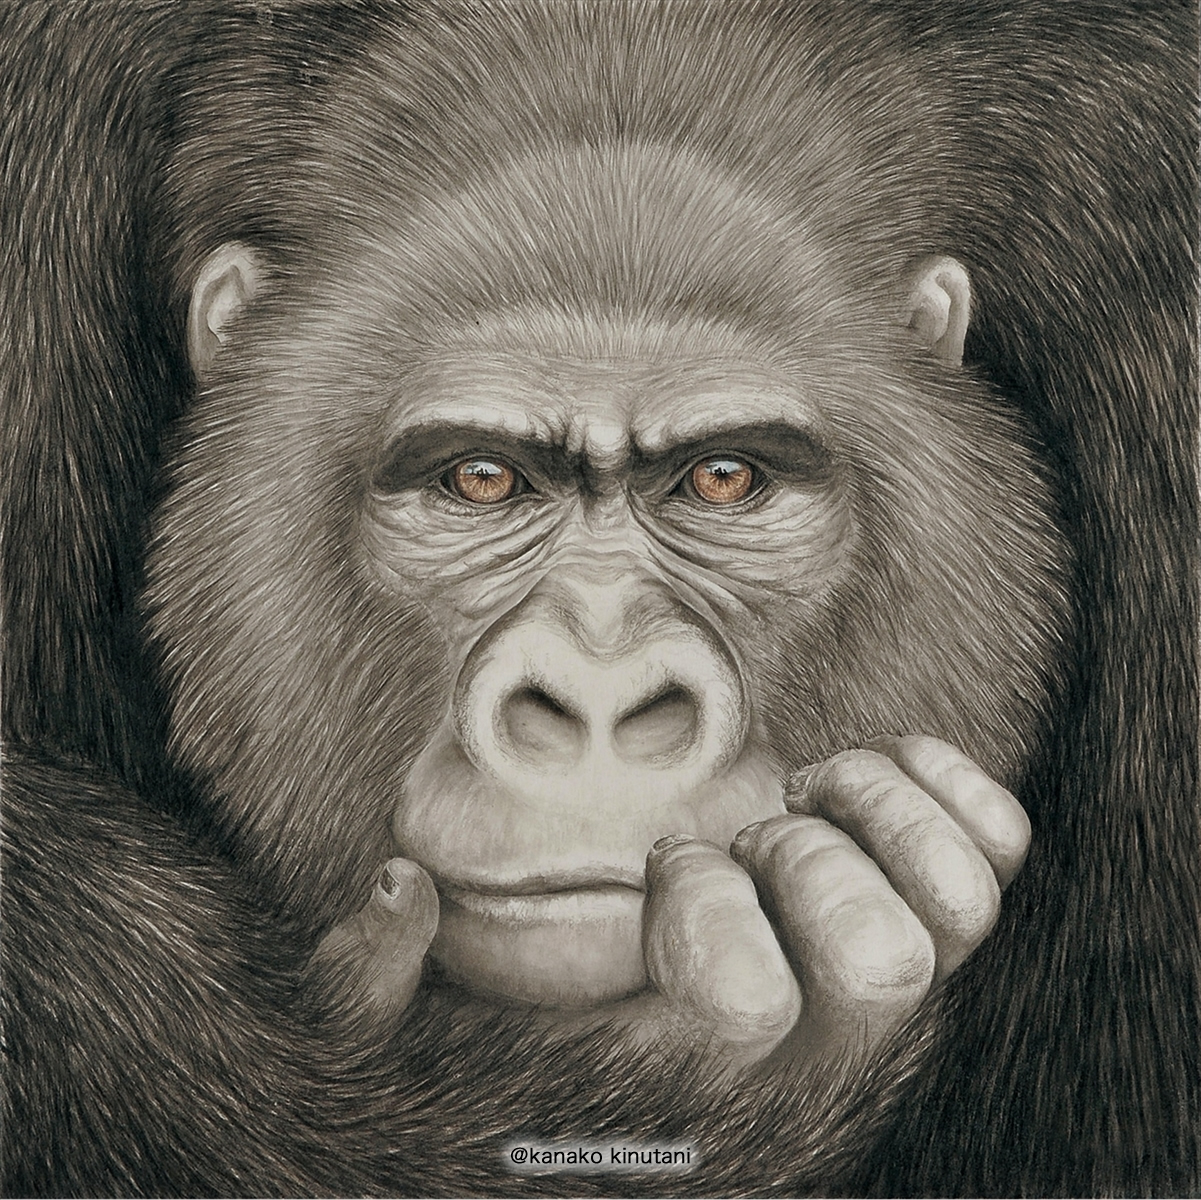 Beyond the Horizon -Gorilla-